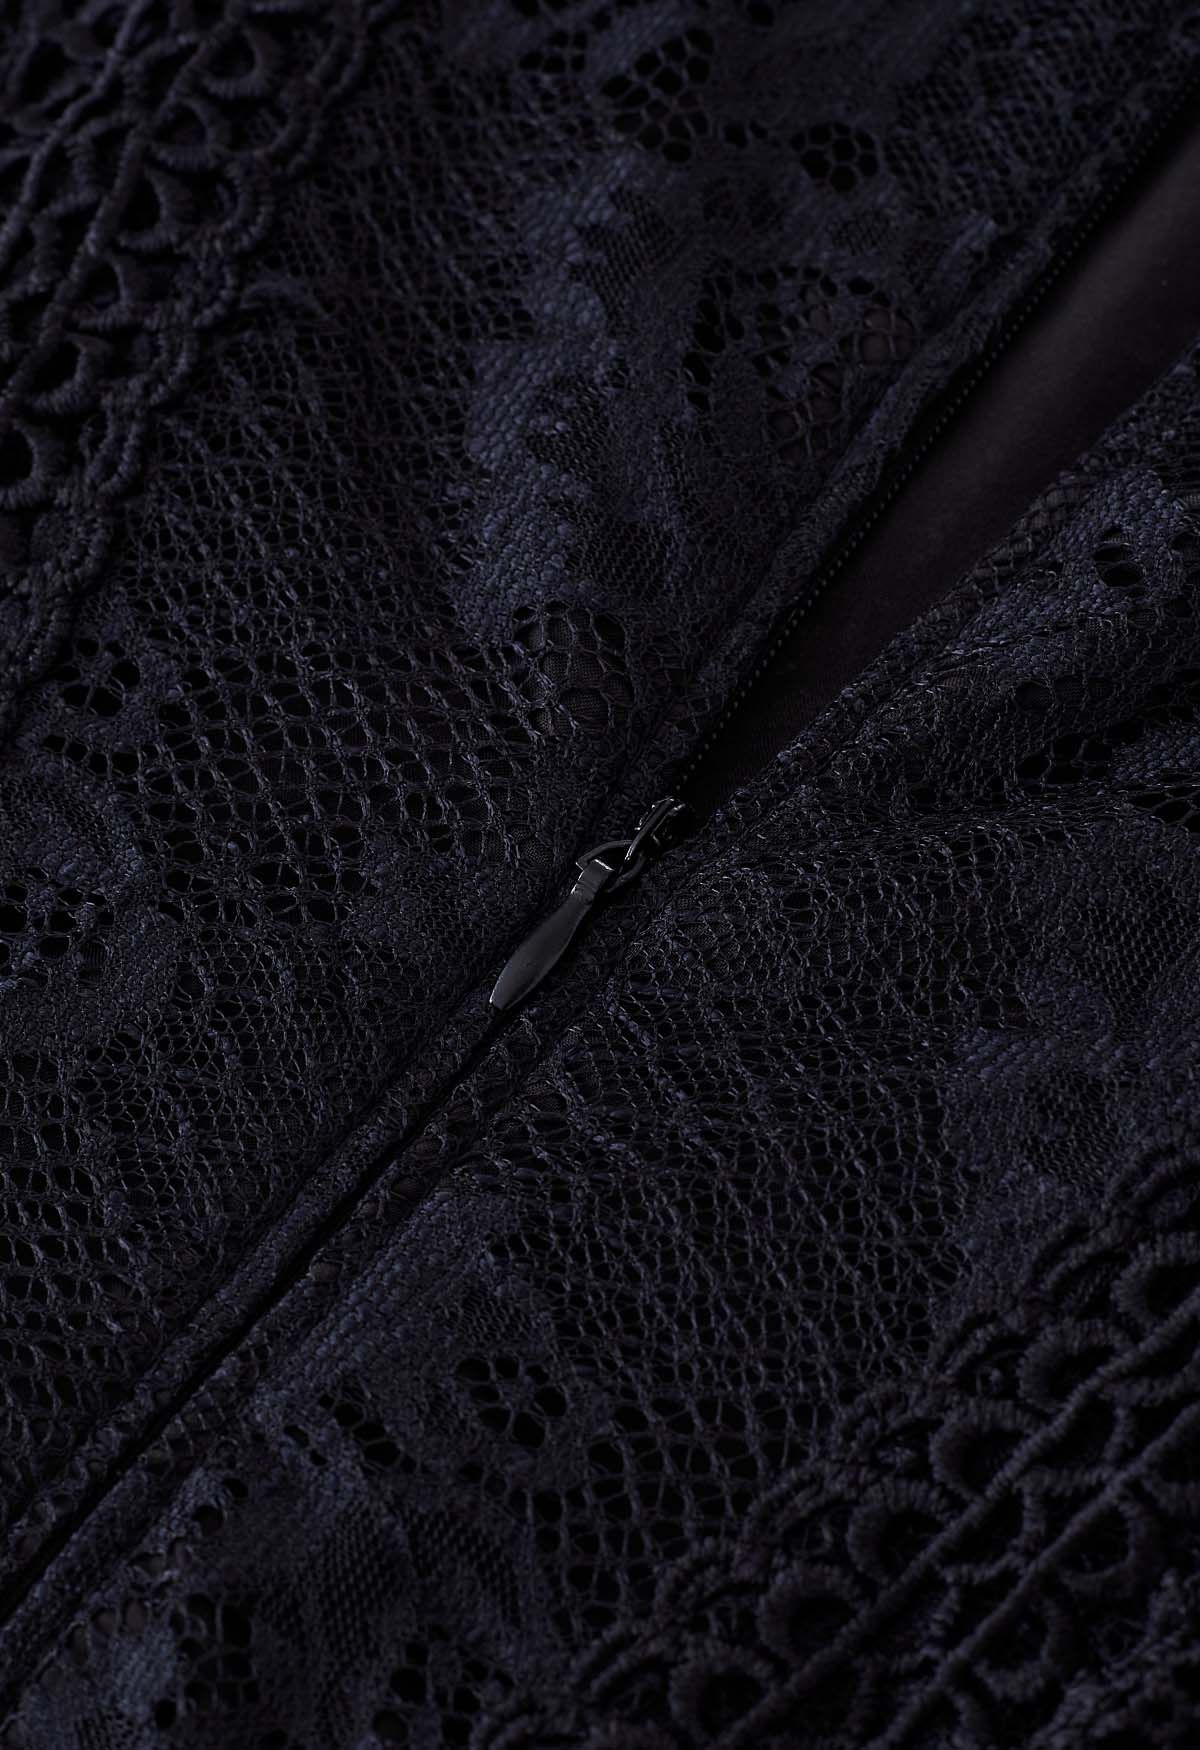 Crochet Lace Spliced Sleeveless Mermaid Dress in Black